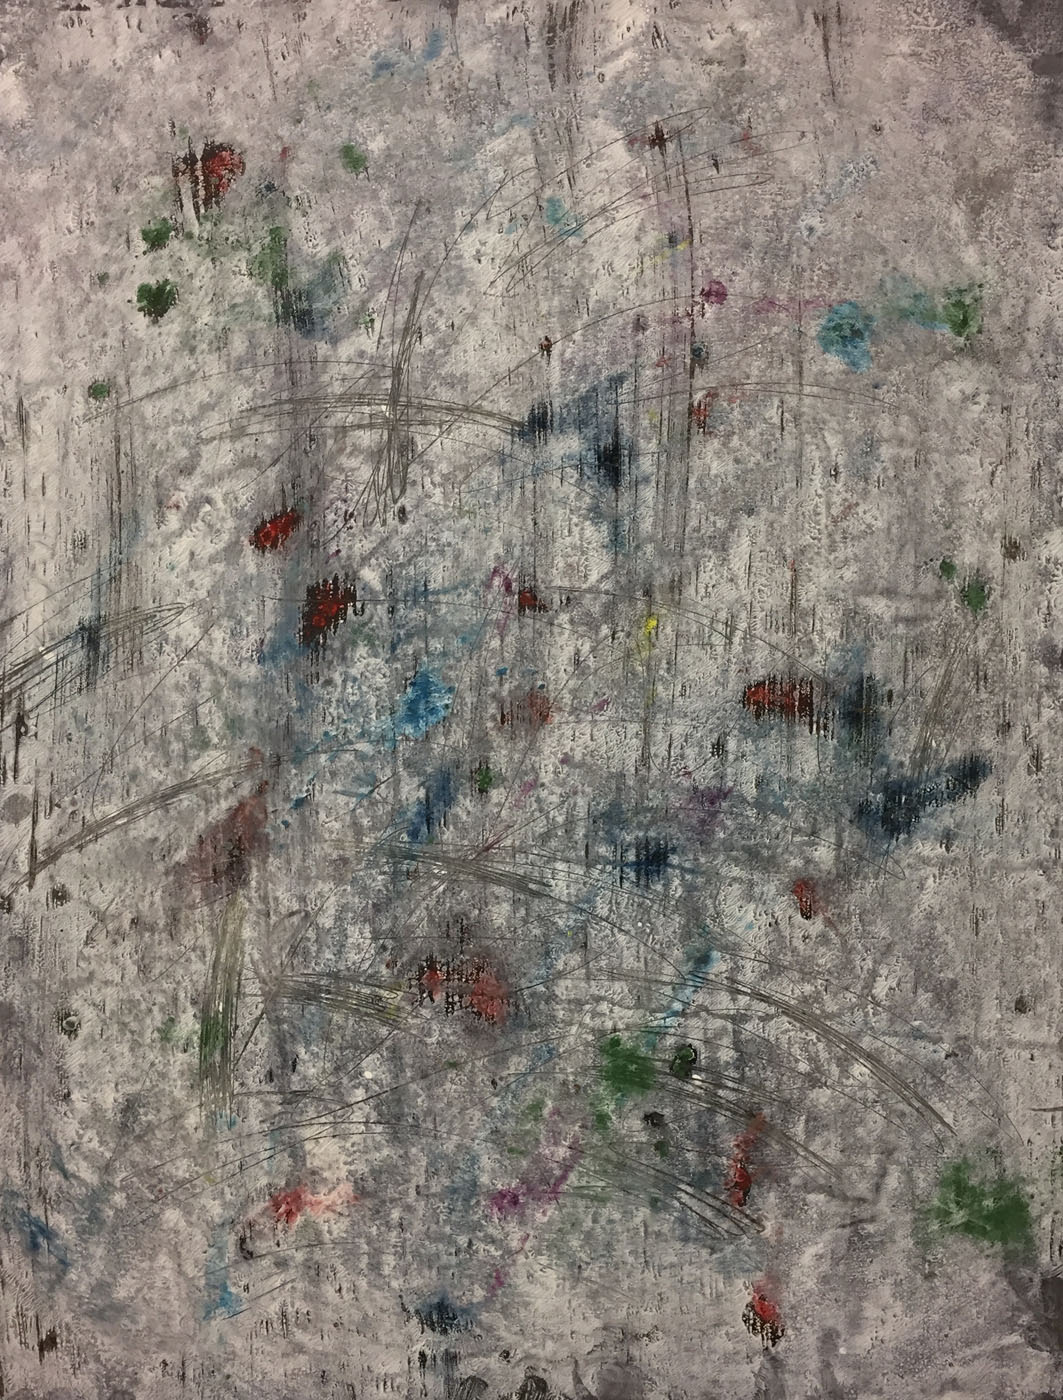 MARC FELD 2019 CONCERTINA Huile, acrylique, mine de plomb et pigment sur papier 50 x 65 cm